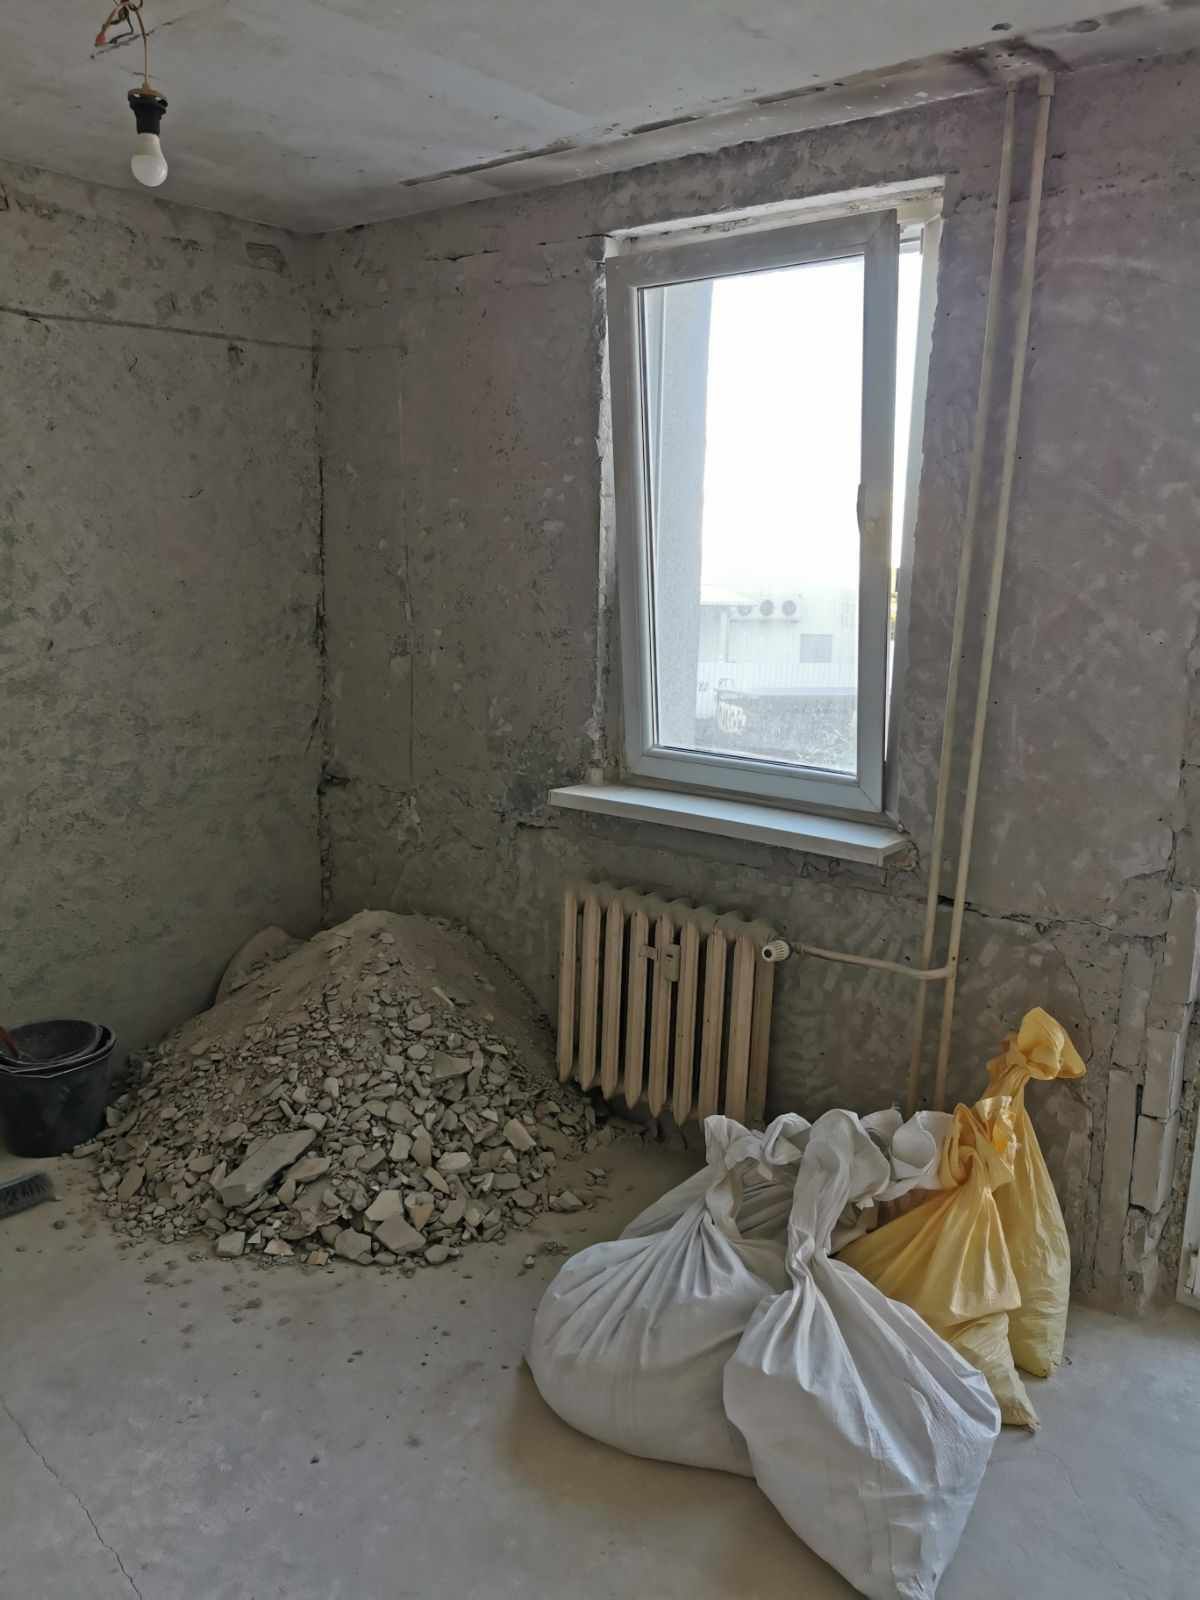 Wywóz gruzu odpadów budowlanych z załadunkiem rozbiórki szopek garaży